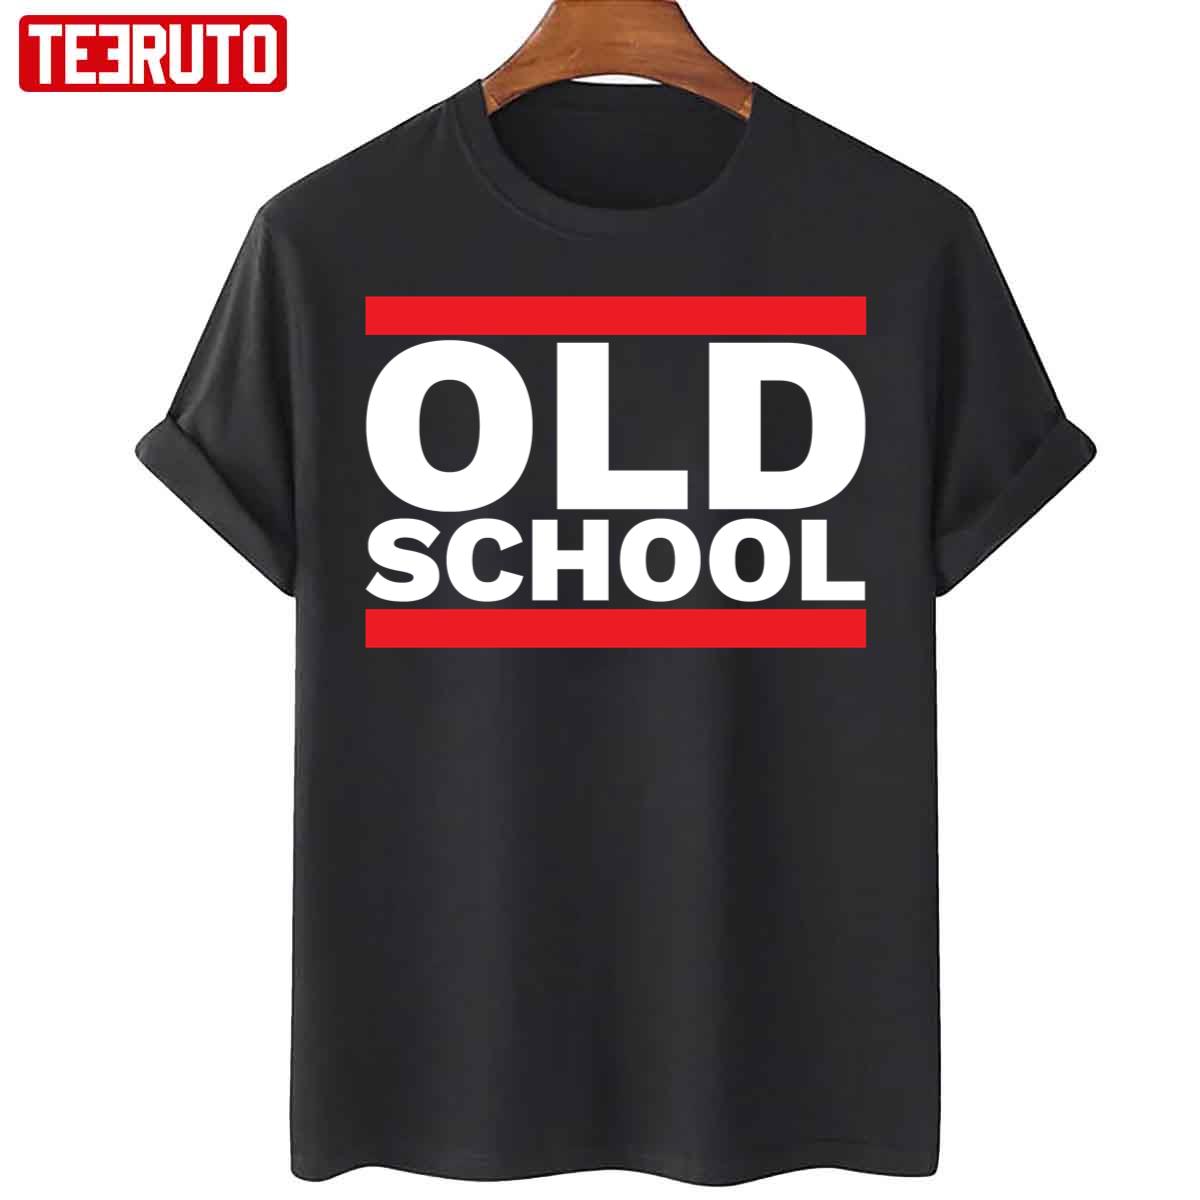 Old School Hiphop Vintage Retro 80s Unisex T-Shirt